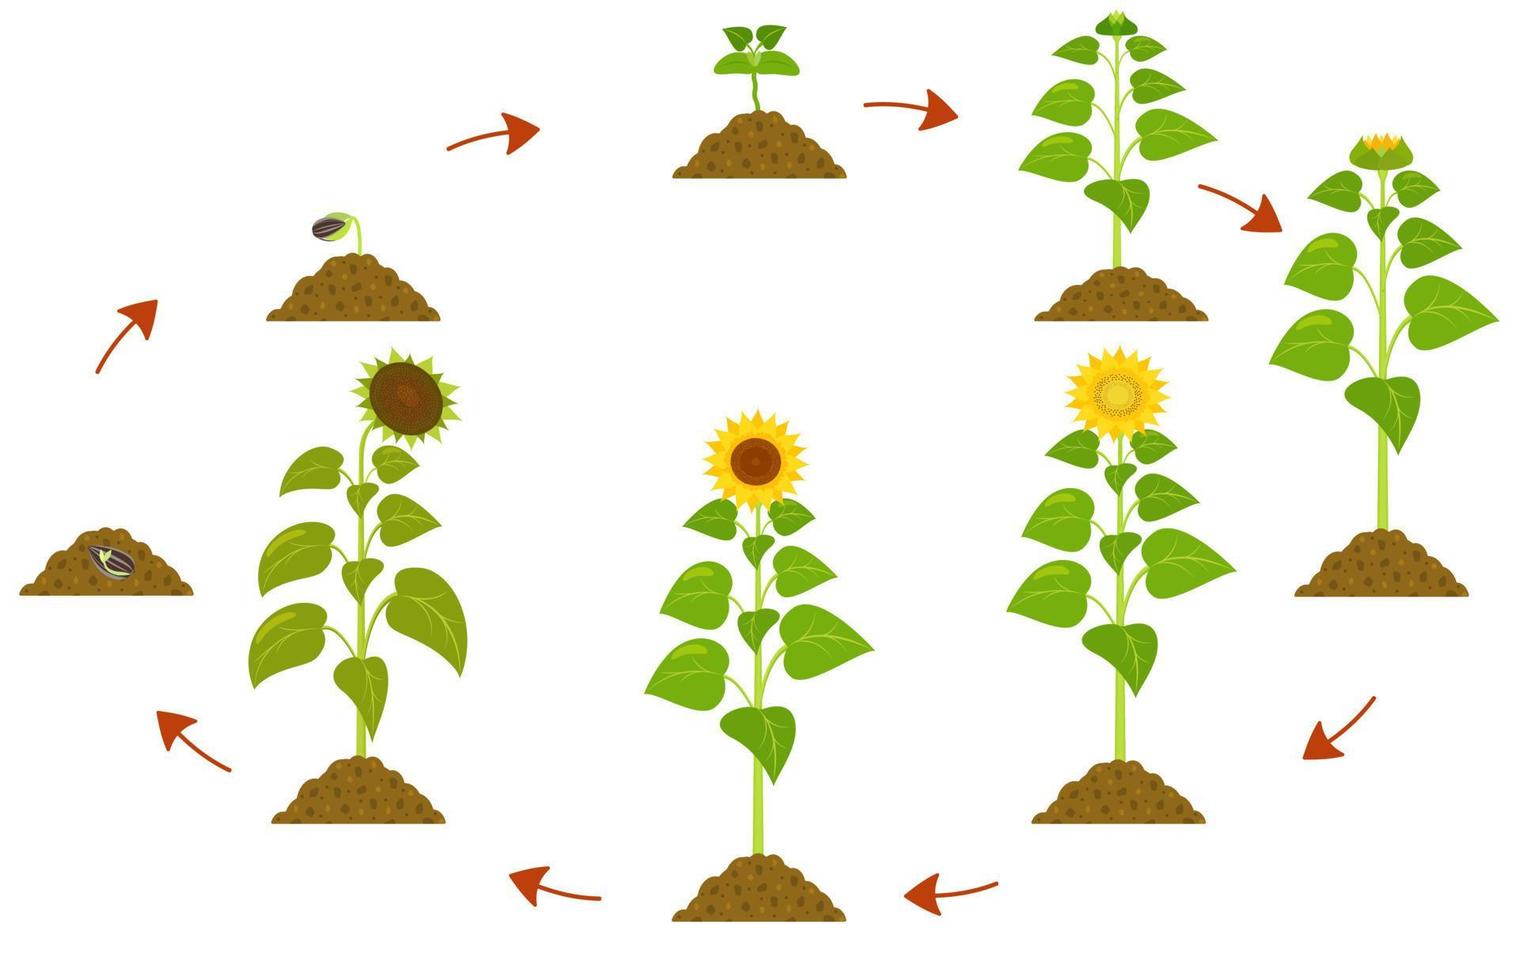 cycle de vie du tournesol. infographie des stades de croissance des plantes, de la graine à la maturité. vecteur